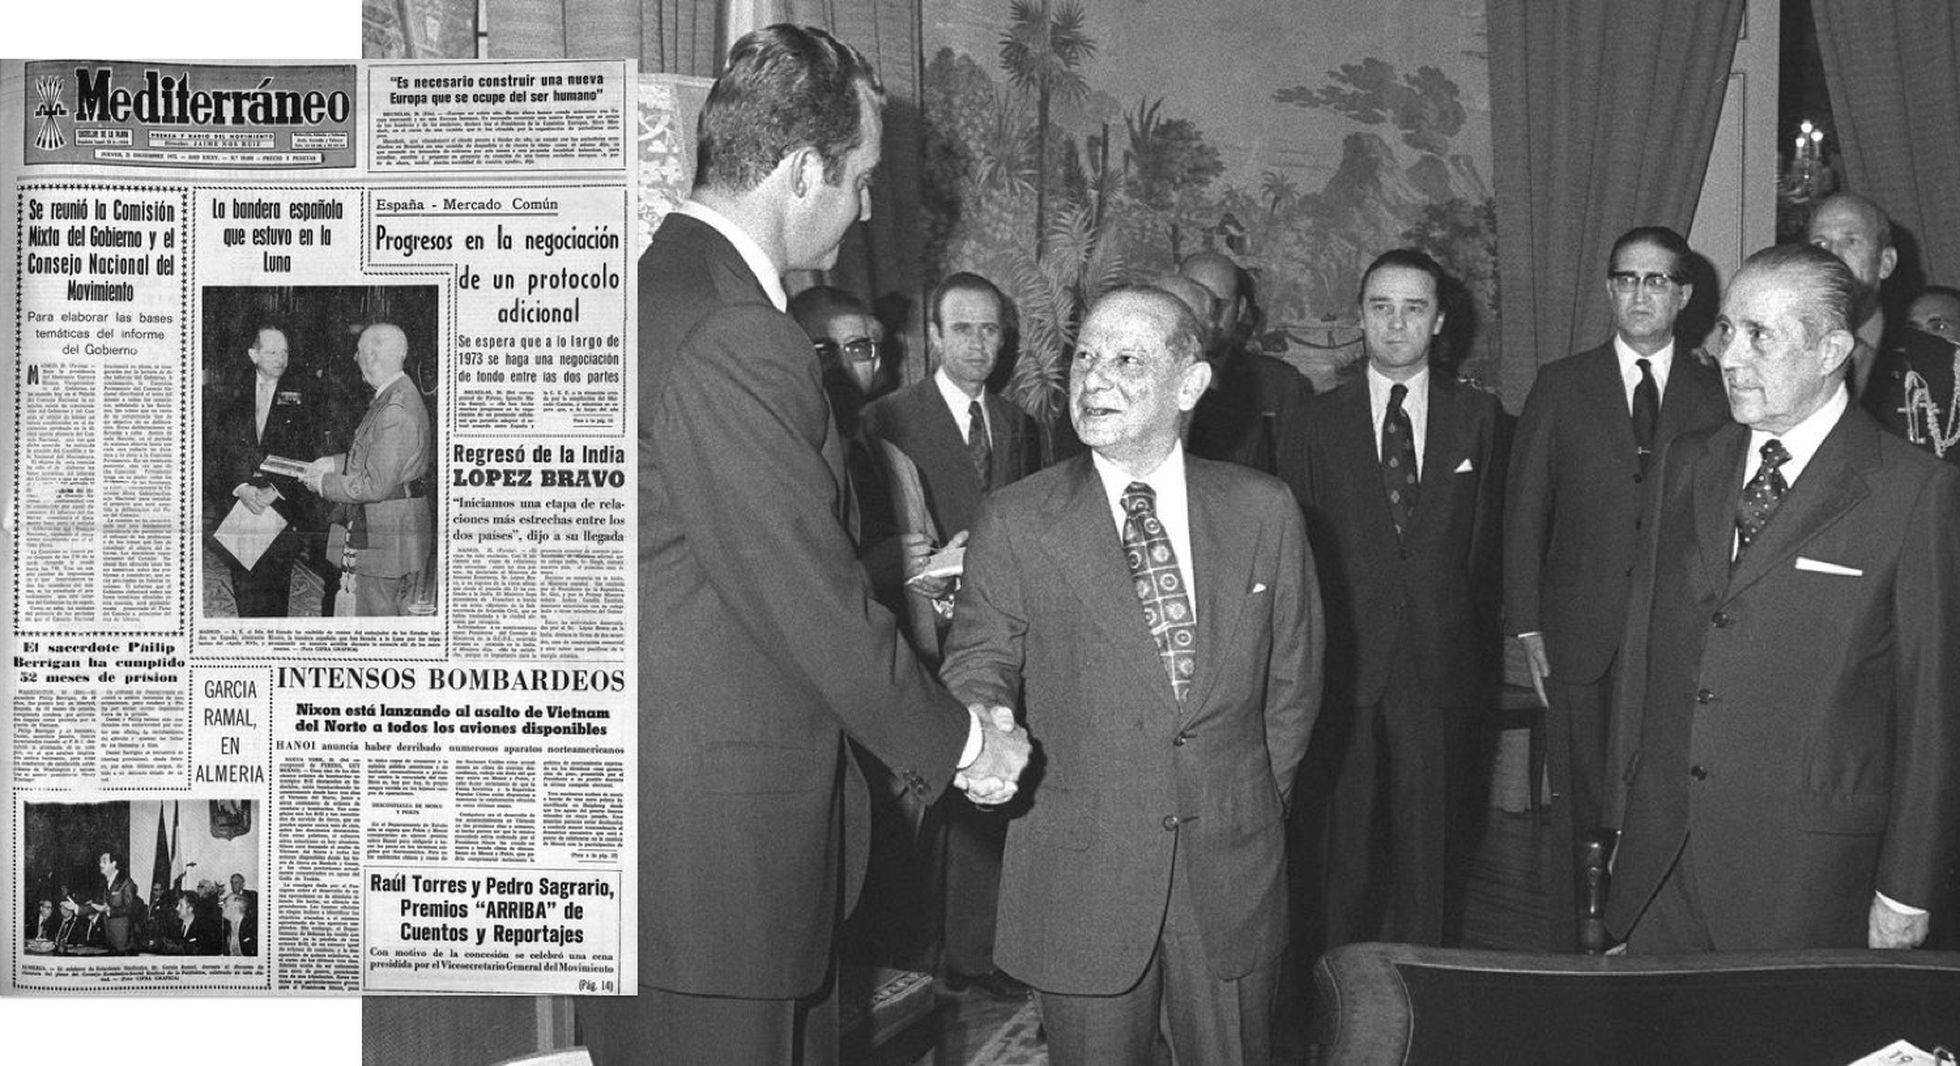 El embajador de EE UU en España, Horacio Rivero, estrecha la mano del príncipe Juan Carlos tras la firma de la Declaración de Principios hispano-norteamericana en Madrid en julio de 1974. A la derecha, portada del diario 'Mediterráneo' del 21 de diciembre de 1972 que refleja un acto protocolario de Rivero con Franco.